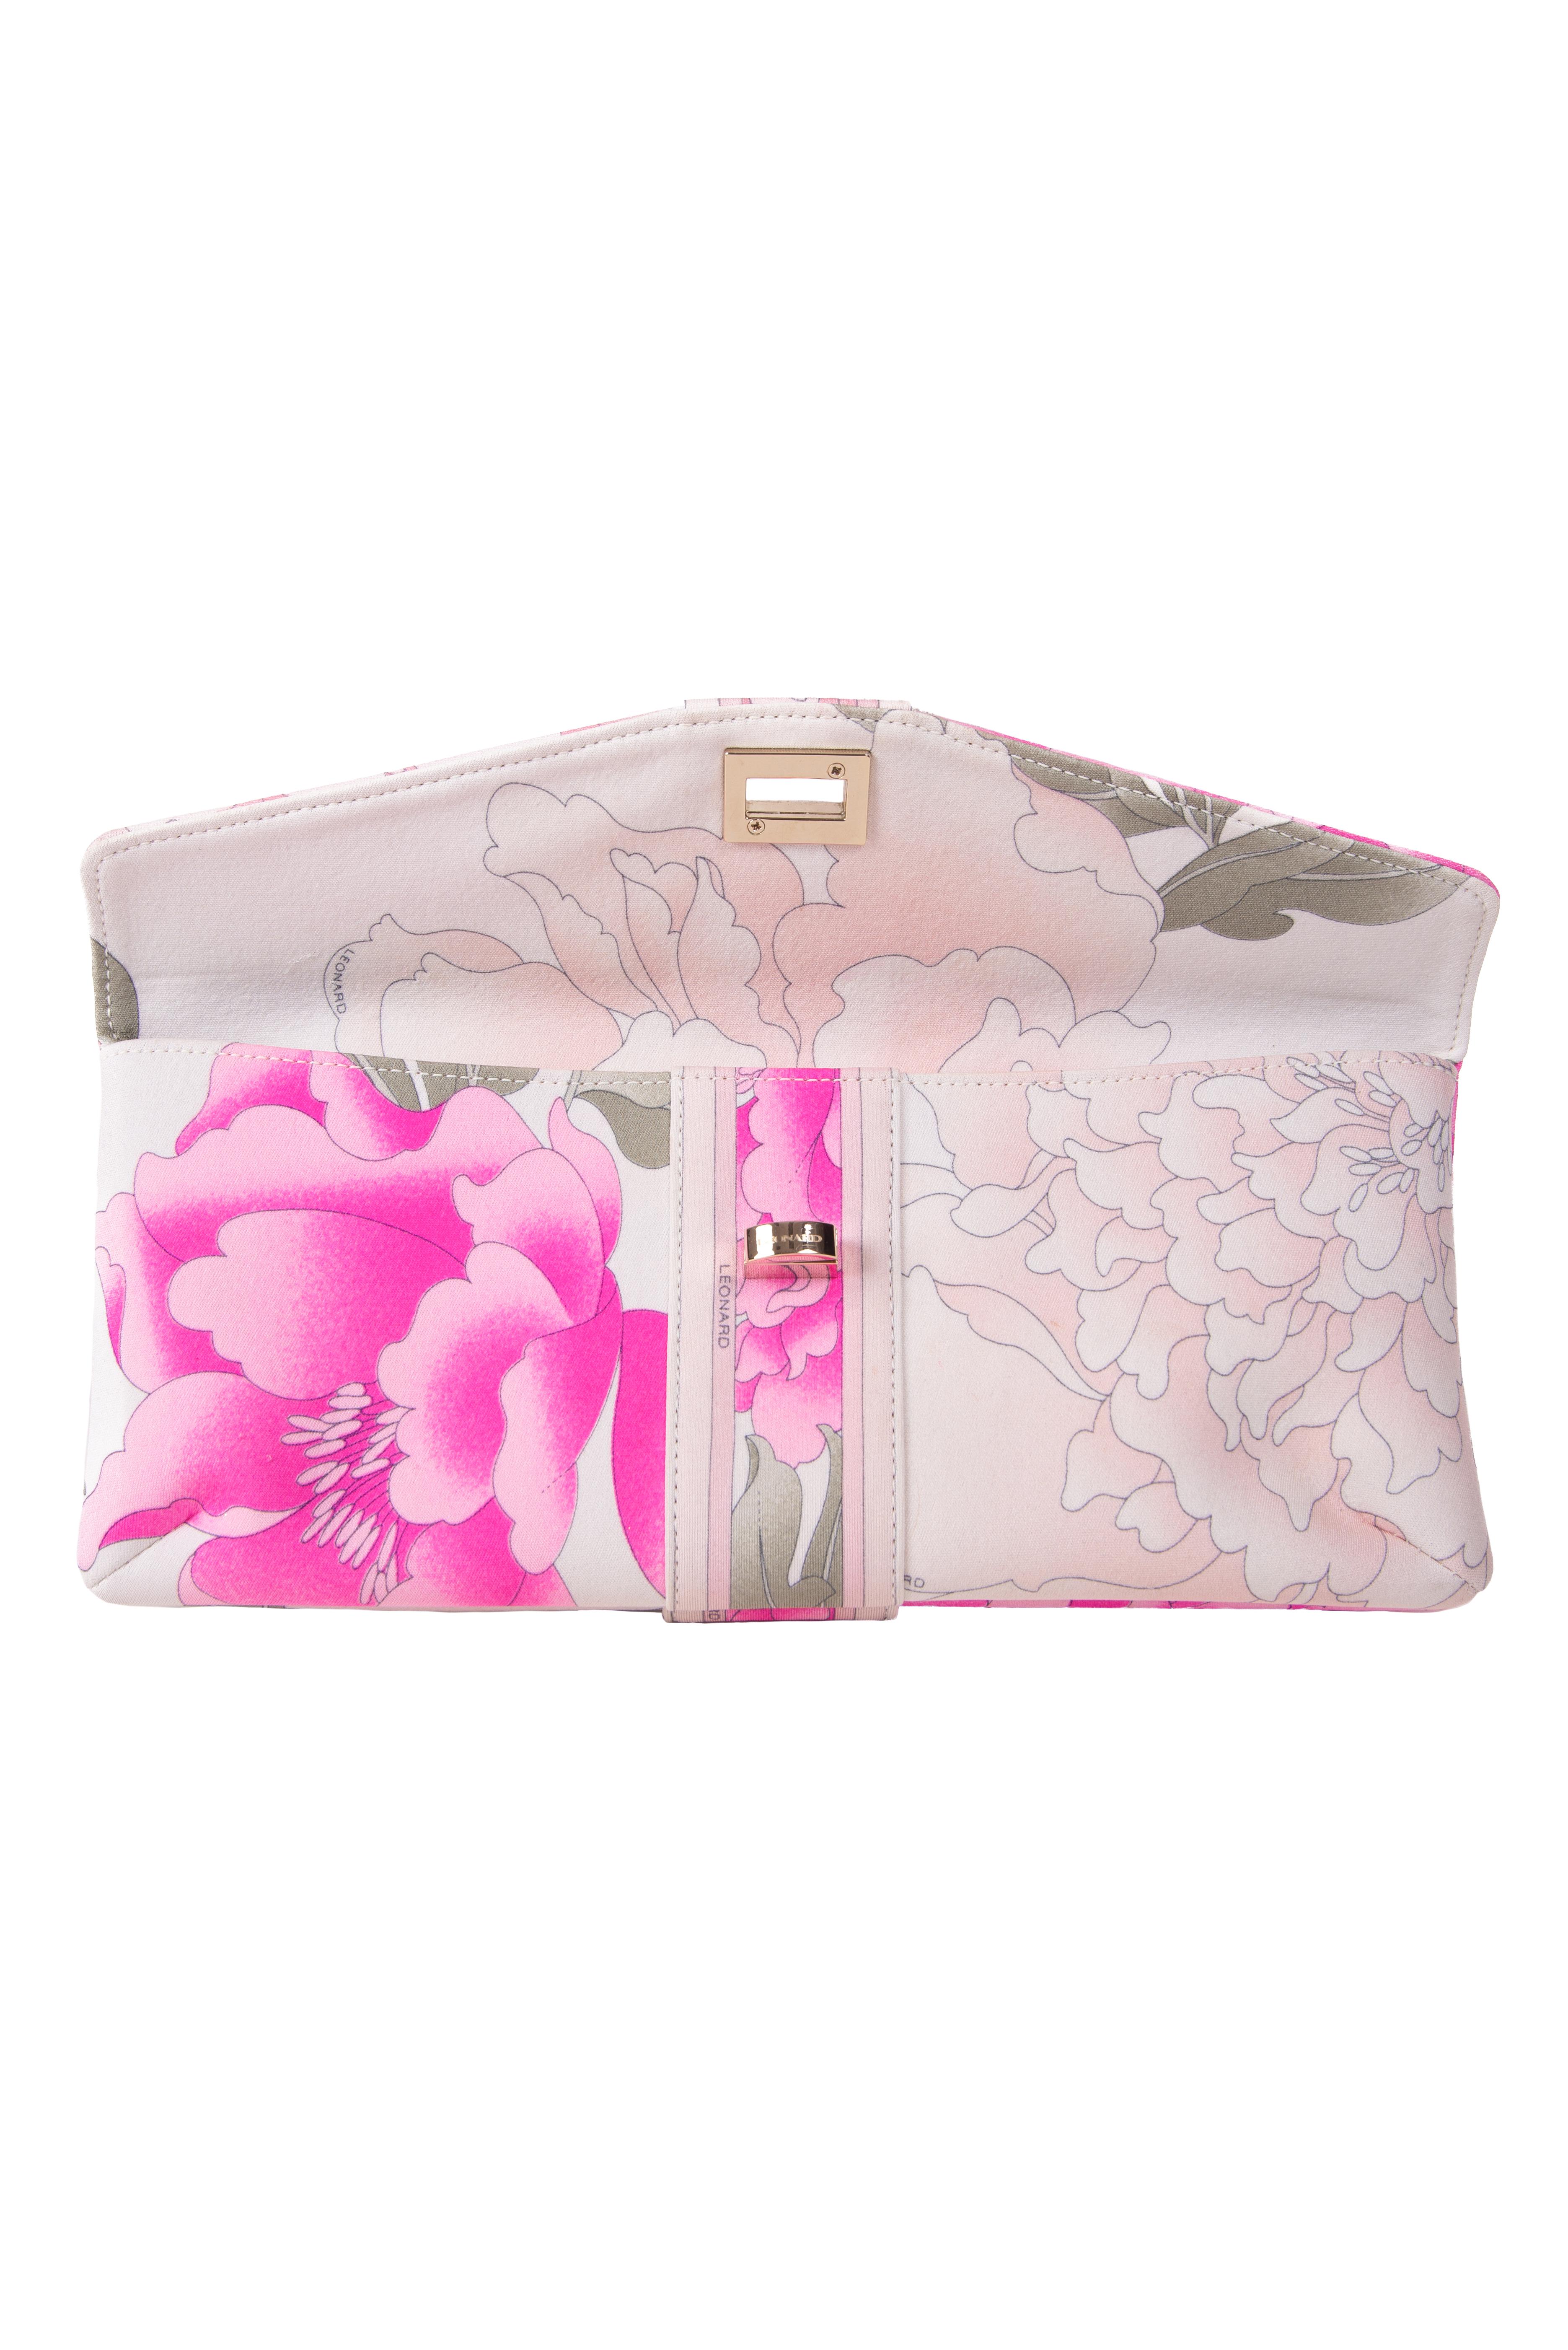 Women's LEONARD PARIS Pink Blush Taupe Signature Floral Print Fabric Vintage Clutch Bag